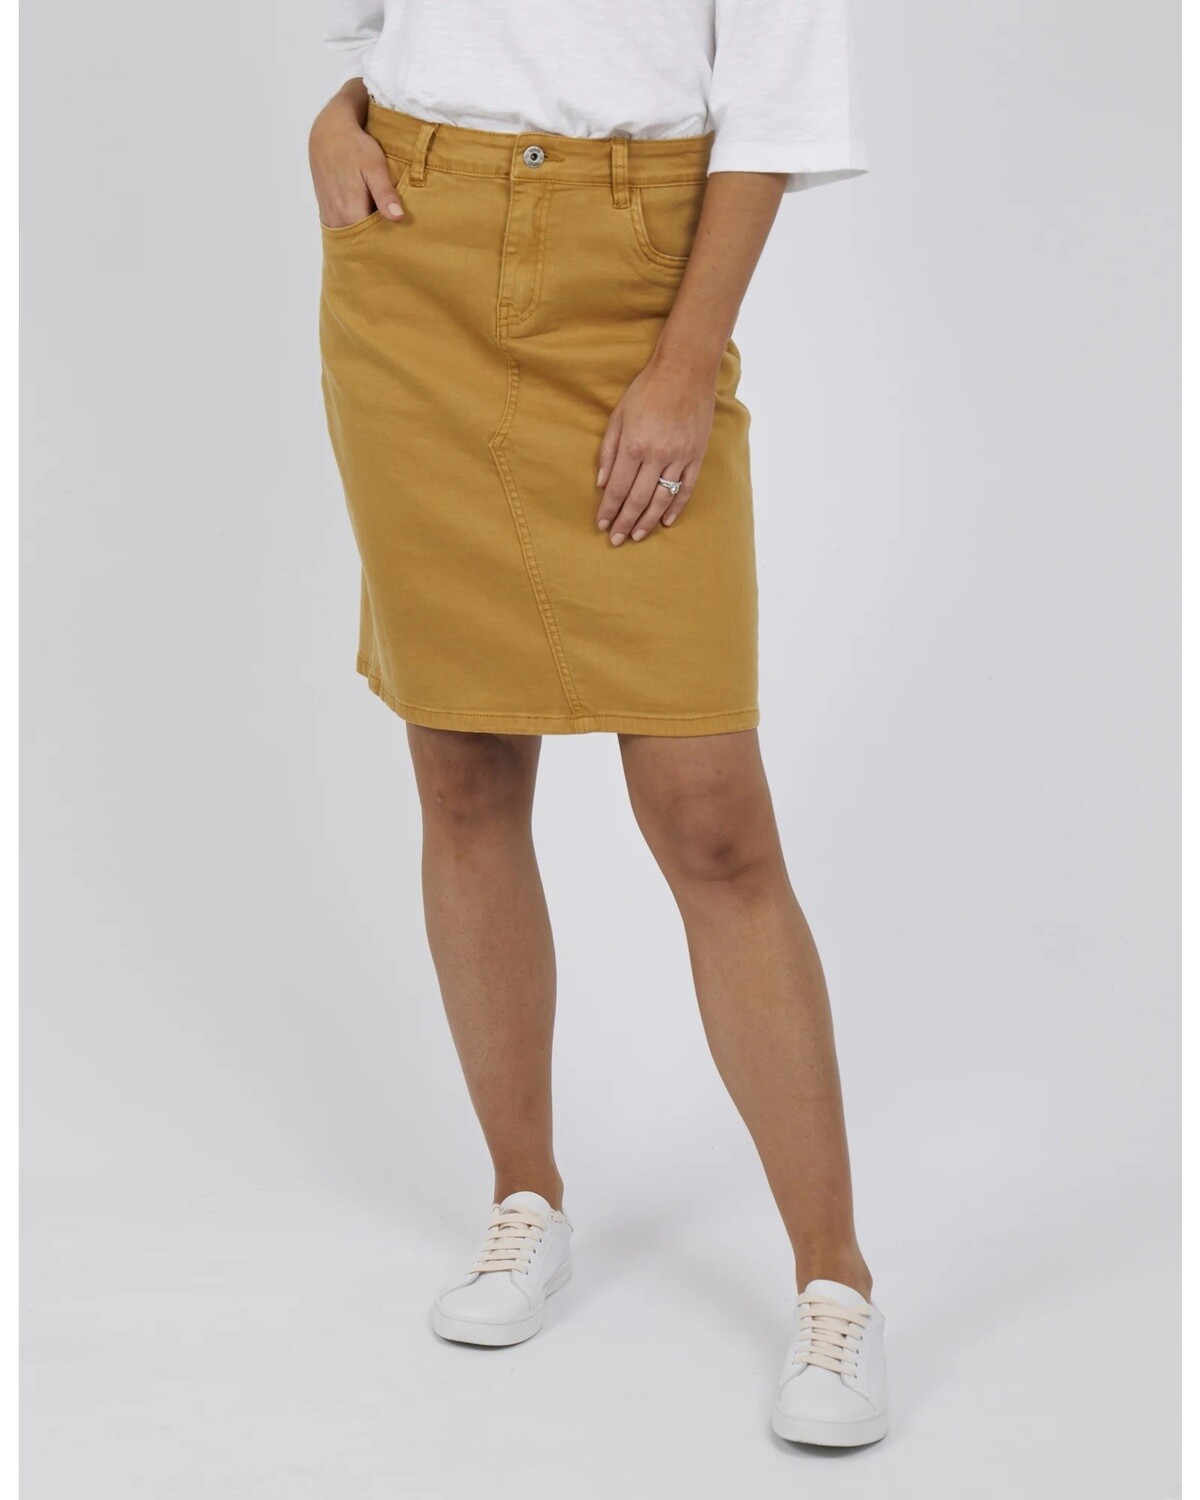 Elm - Belle Denim Skirt - Mustard